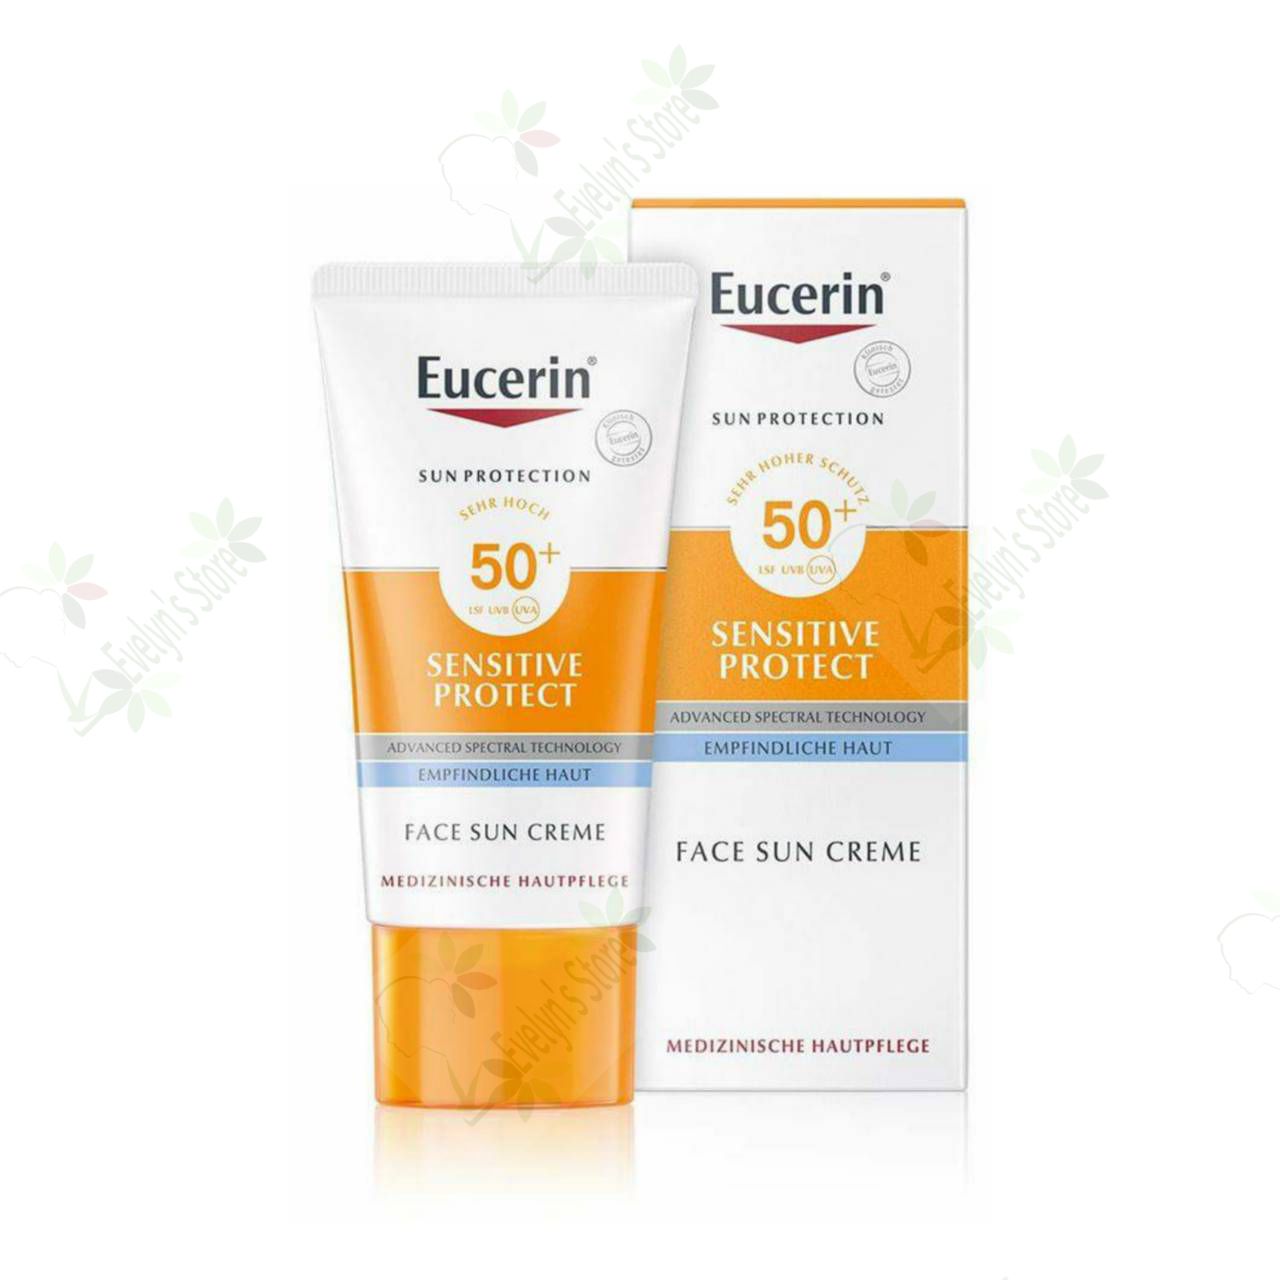 ยูเซอริน ซัน โปรเทคชั่น เซนซิทีฟ โปรเทค ครีม เอสพีเอฟ50+ Eucerin Sun Protection Sensitive Protect Creme SPF50+ 50ml. (ซันครีม) กันแดดสำหรับผิวธรรมดาและผิวแห้ง